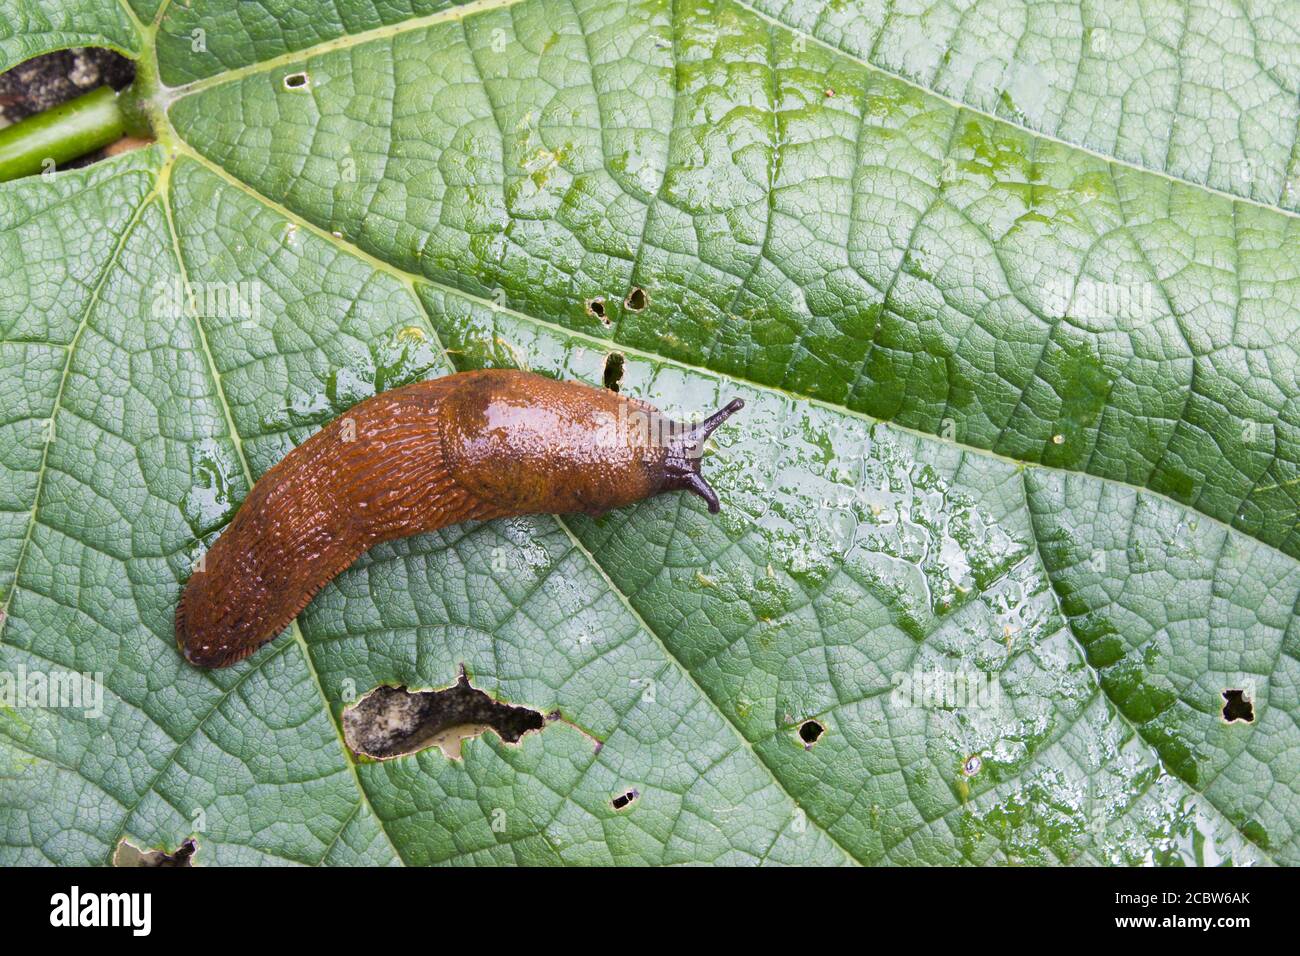 Detail of slug arion lusitanicus on leaf in the garden Stock Photo